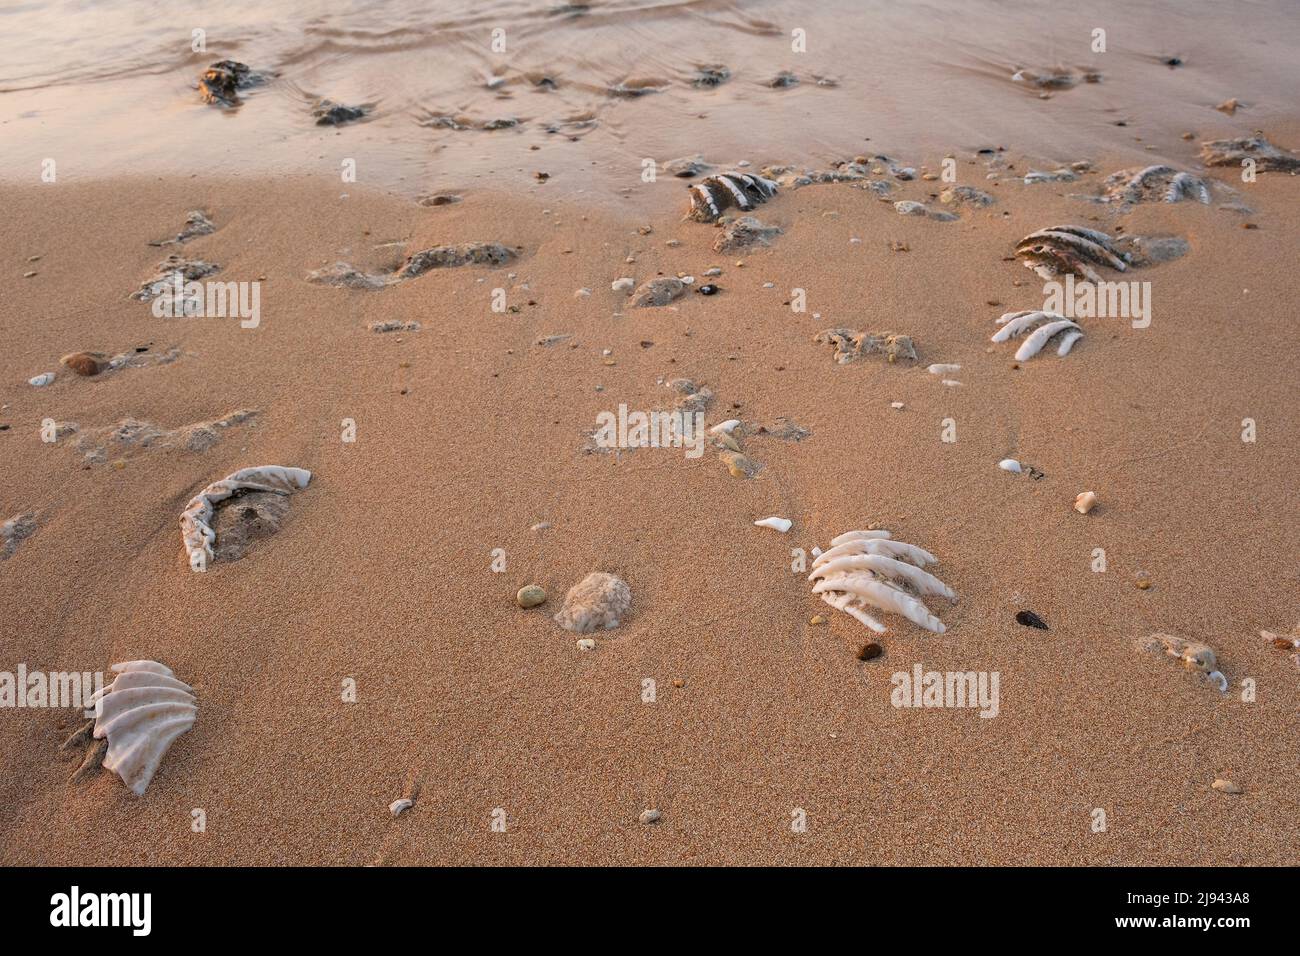 Coquillages fossilisés de tridacna sur une plage de sable de corail dans la zone de surf. Mer Rouge, Égypte Banque D'Images